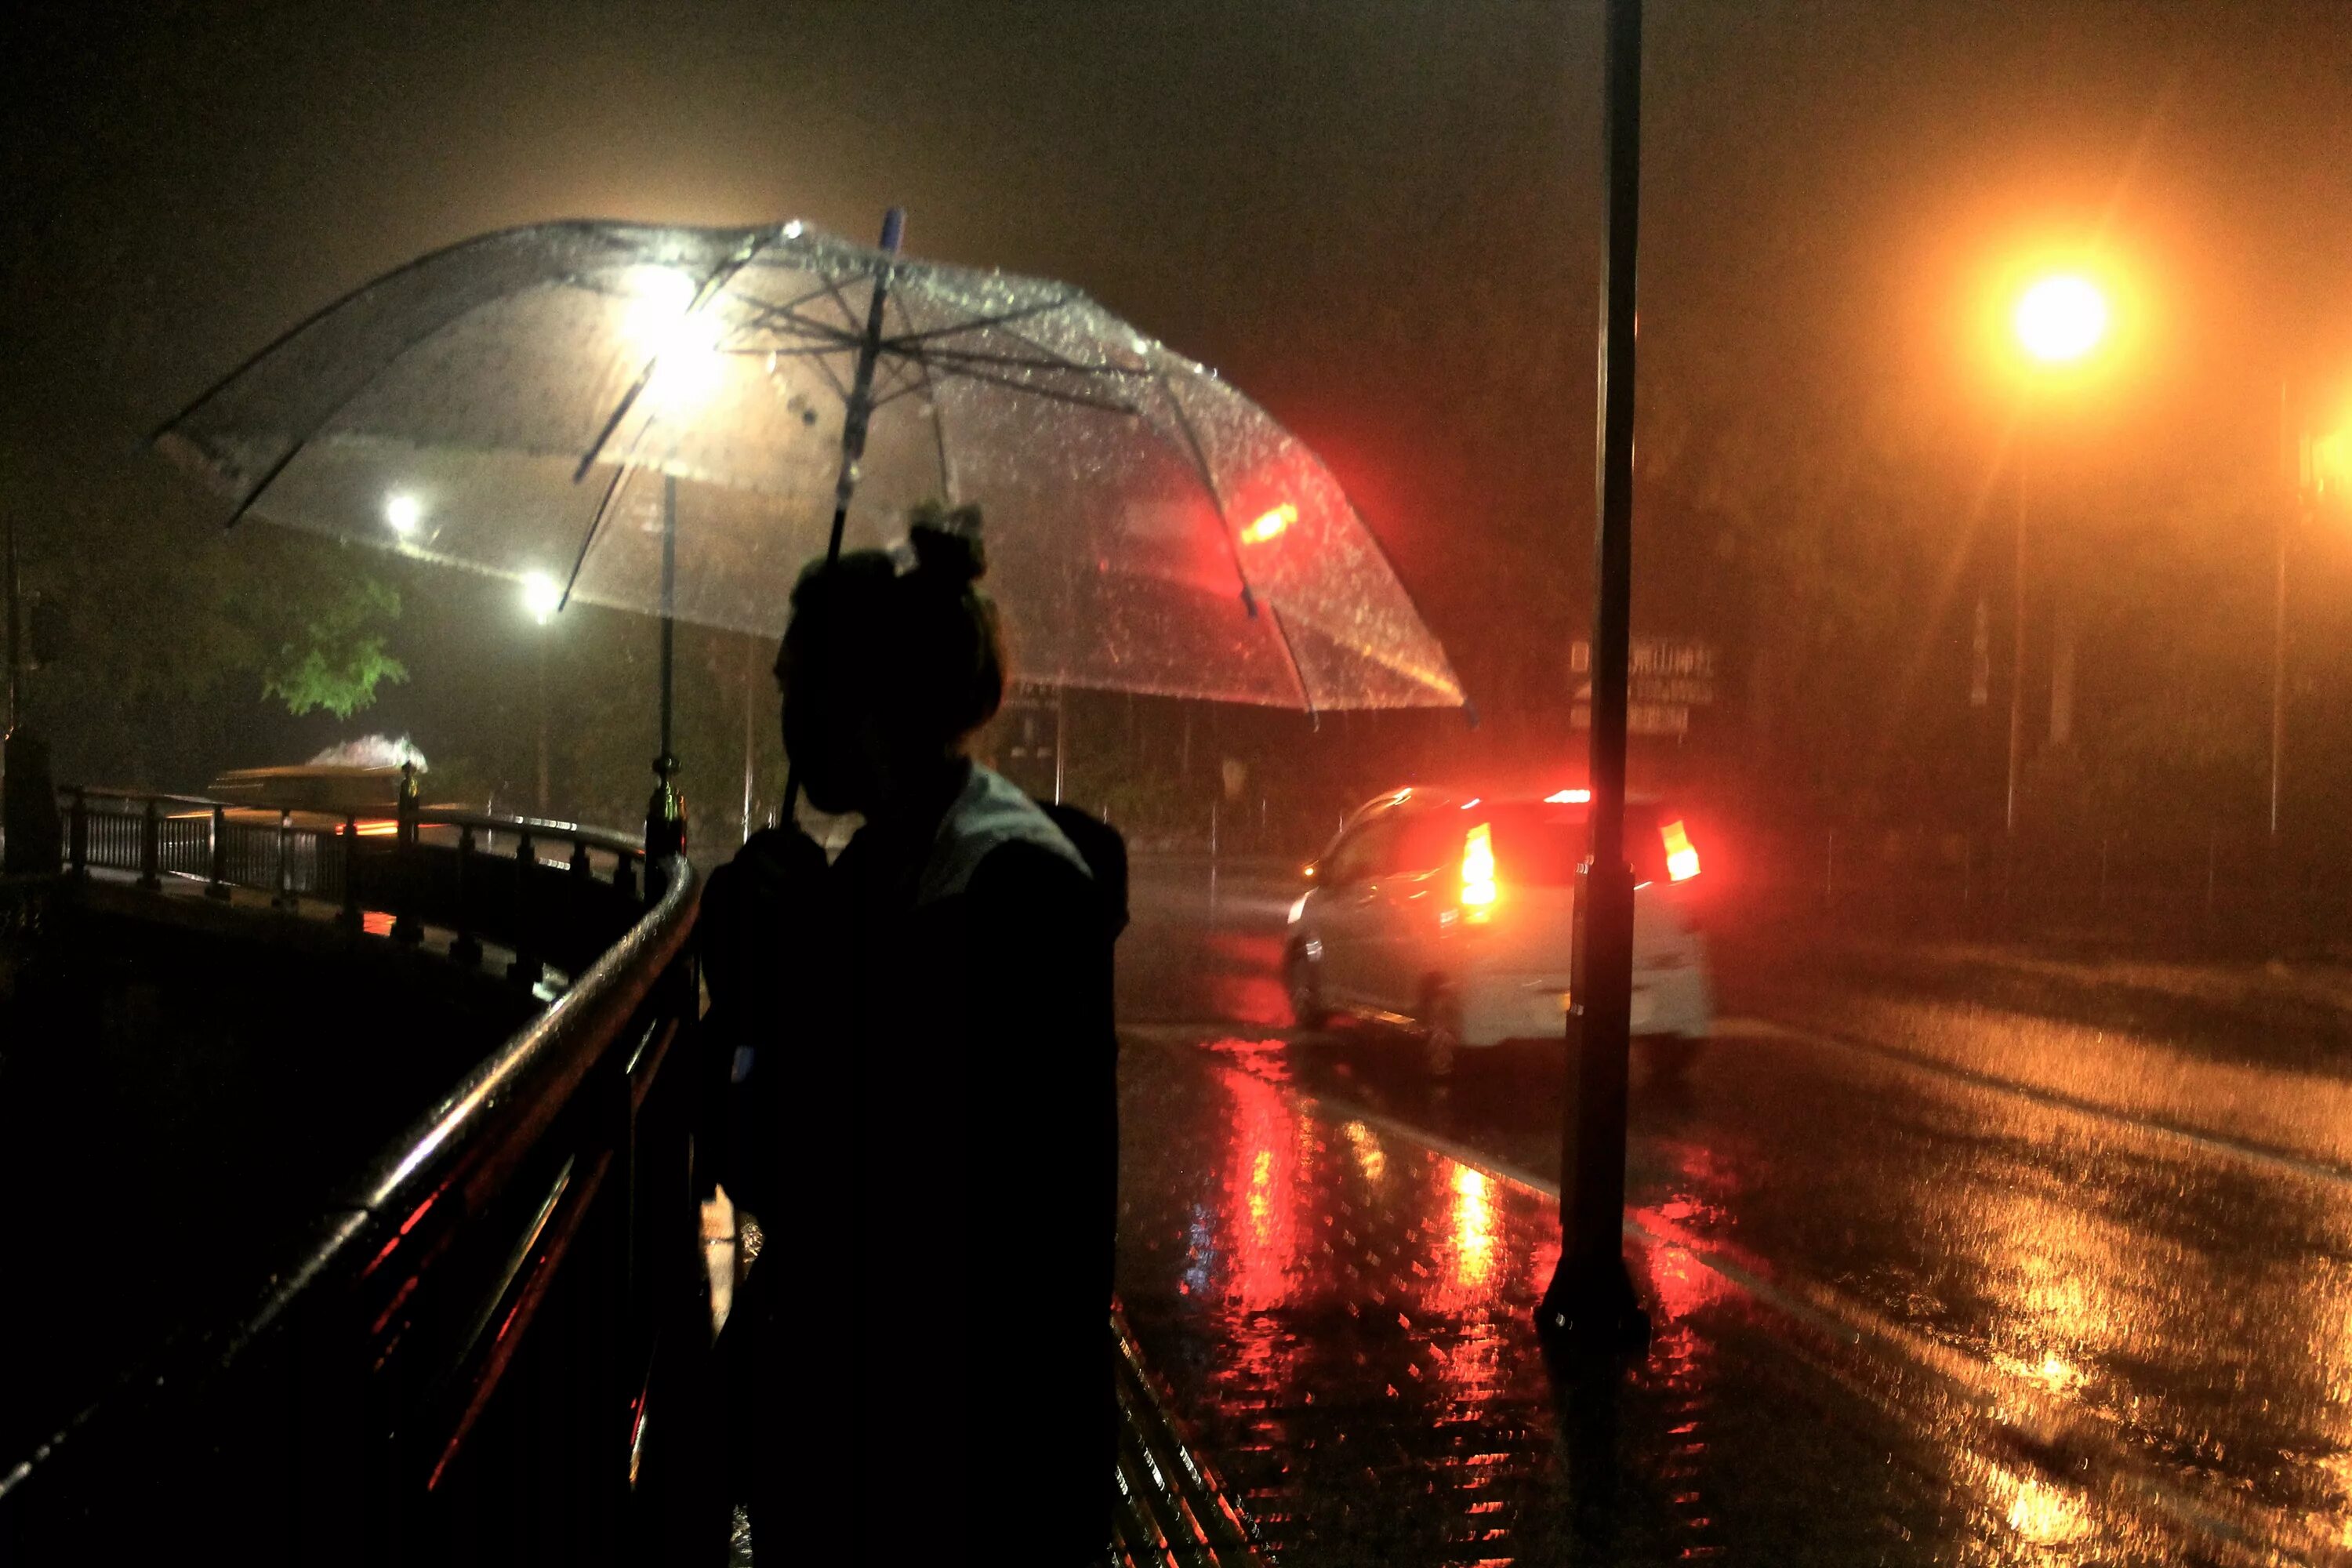 Дождь ночью. Человек под зонтом. Город ночью под дождем. "Дождливый вечер". За окном дождь ночь фонари тает первый